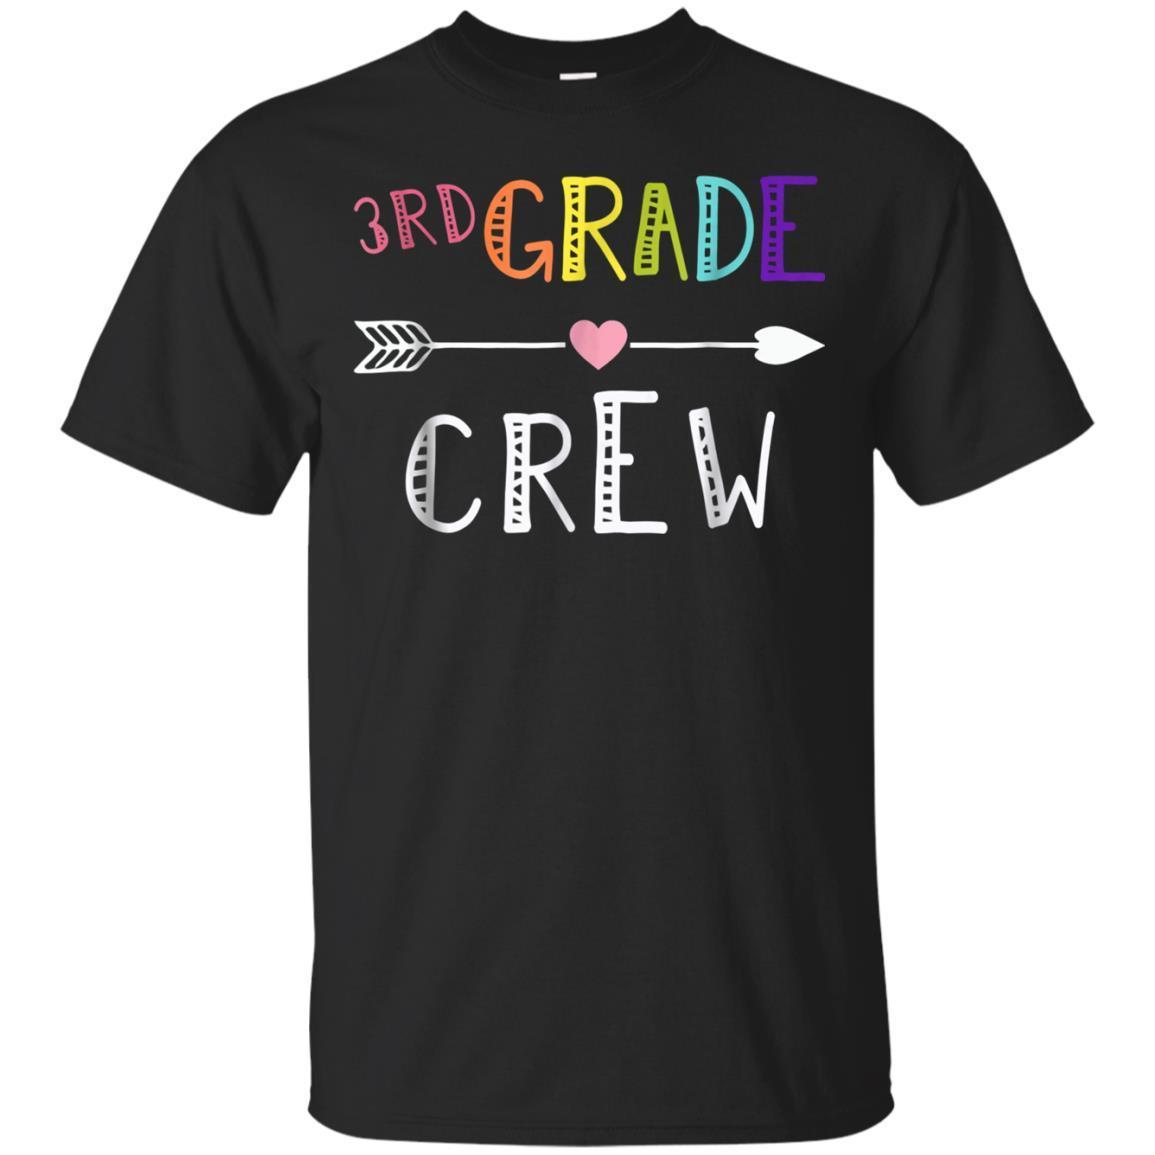 Third Grade Teacher Tshirt First Day School 3rd Grade Crew T-shirt - Amyna